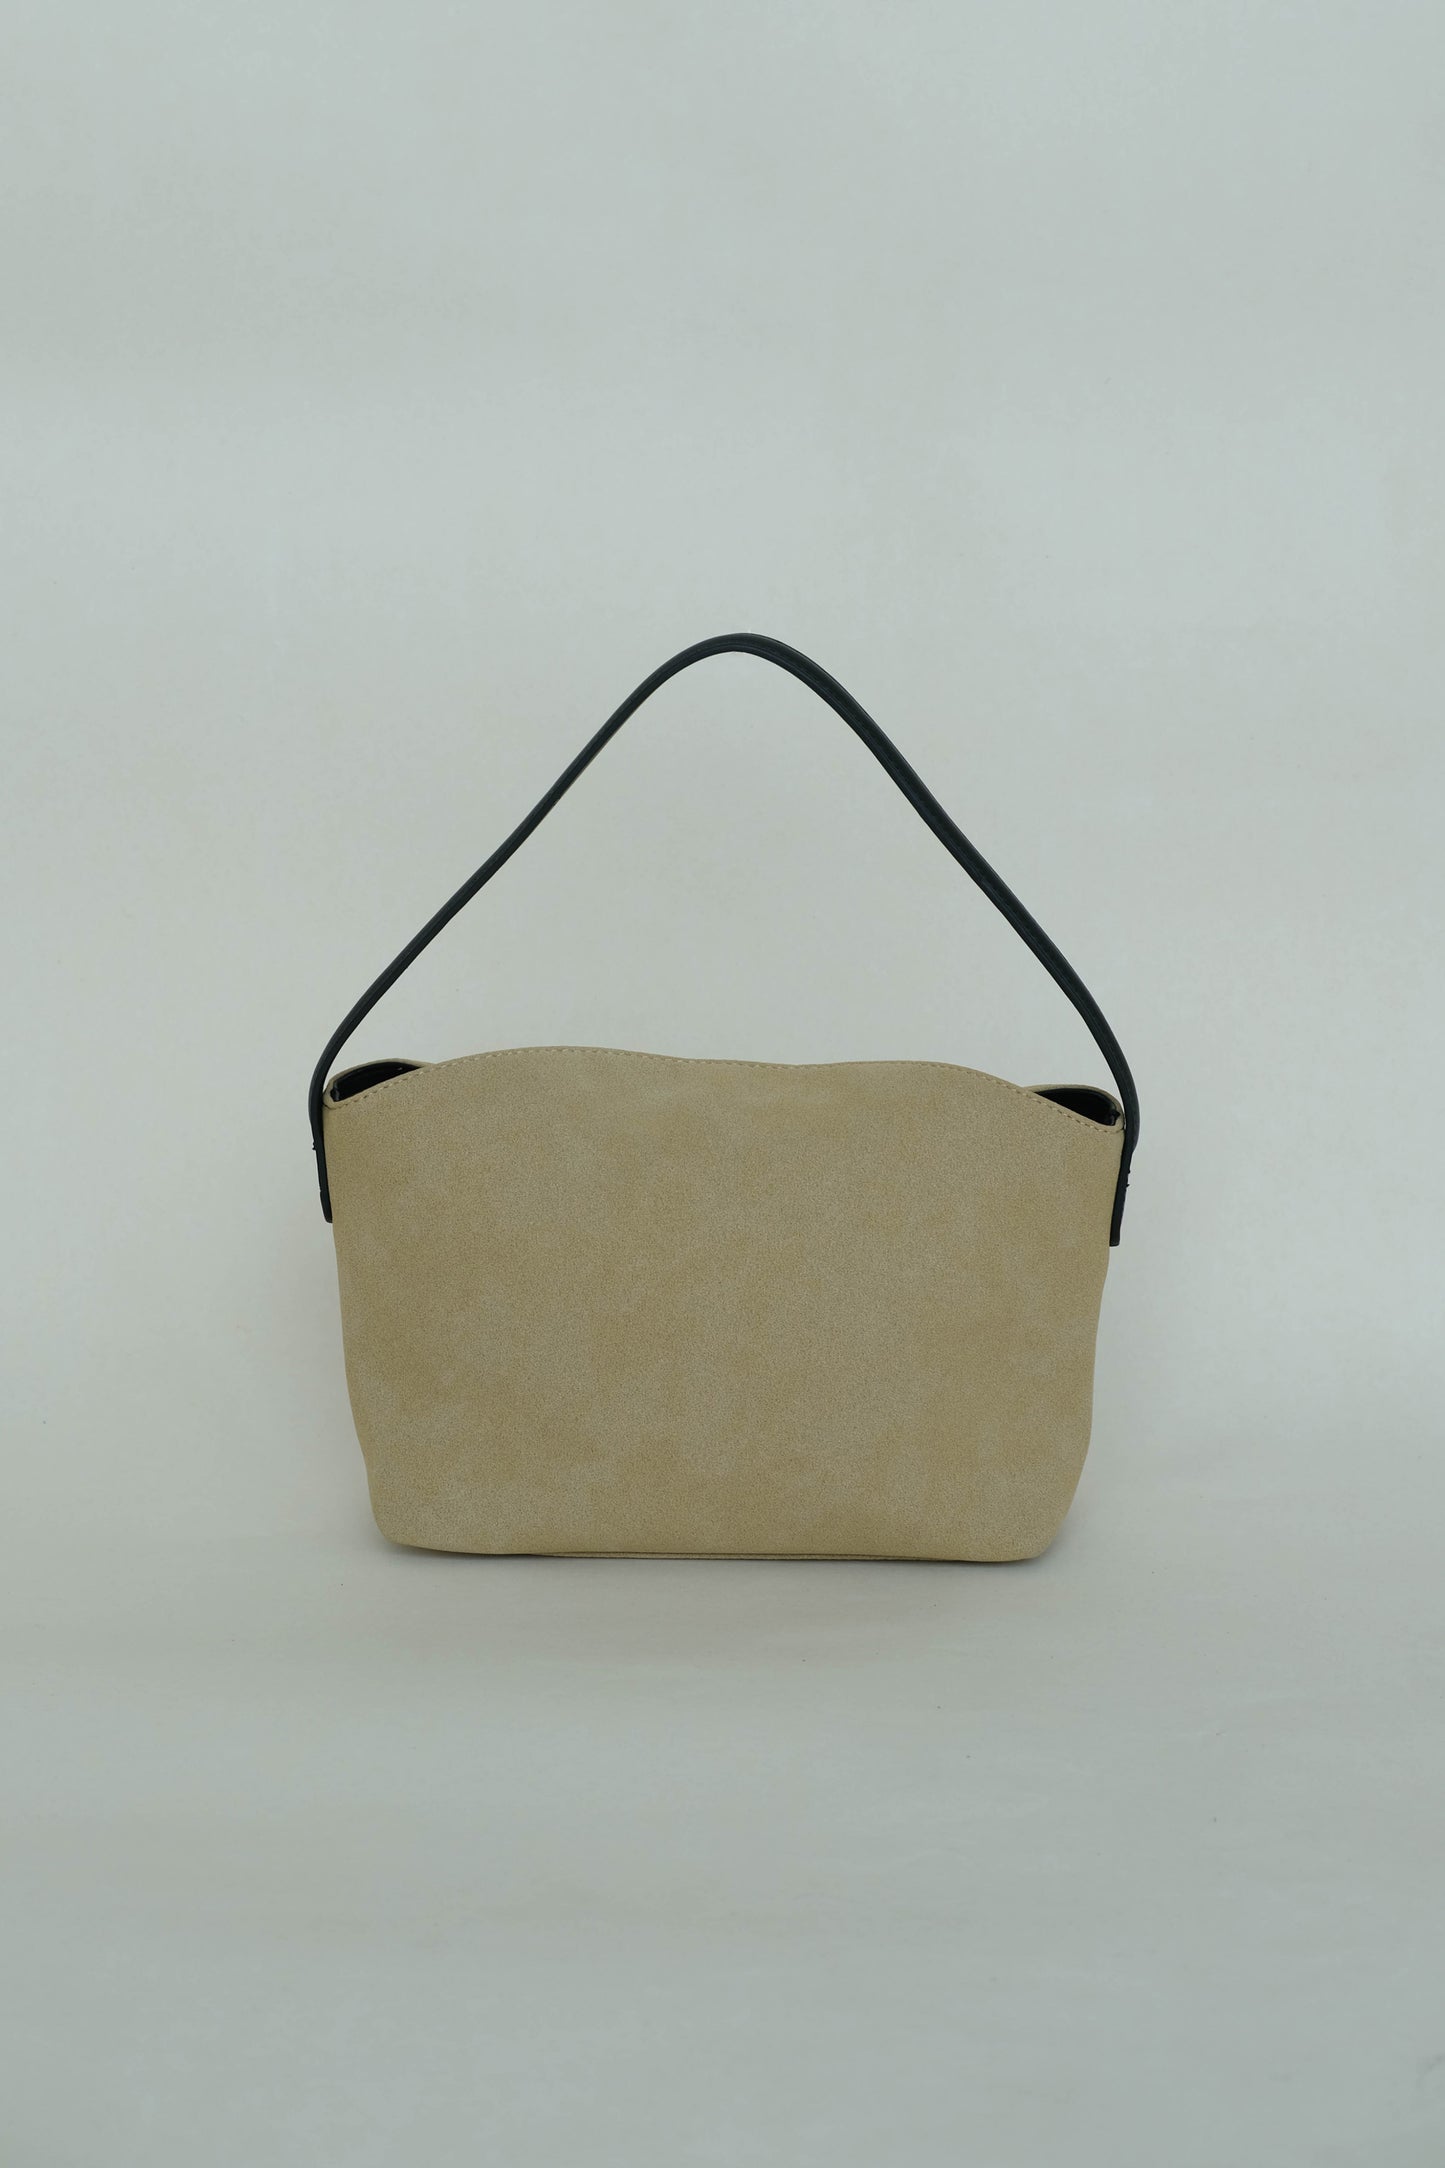 Matte finish single-strap shoulder bag in apricot color